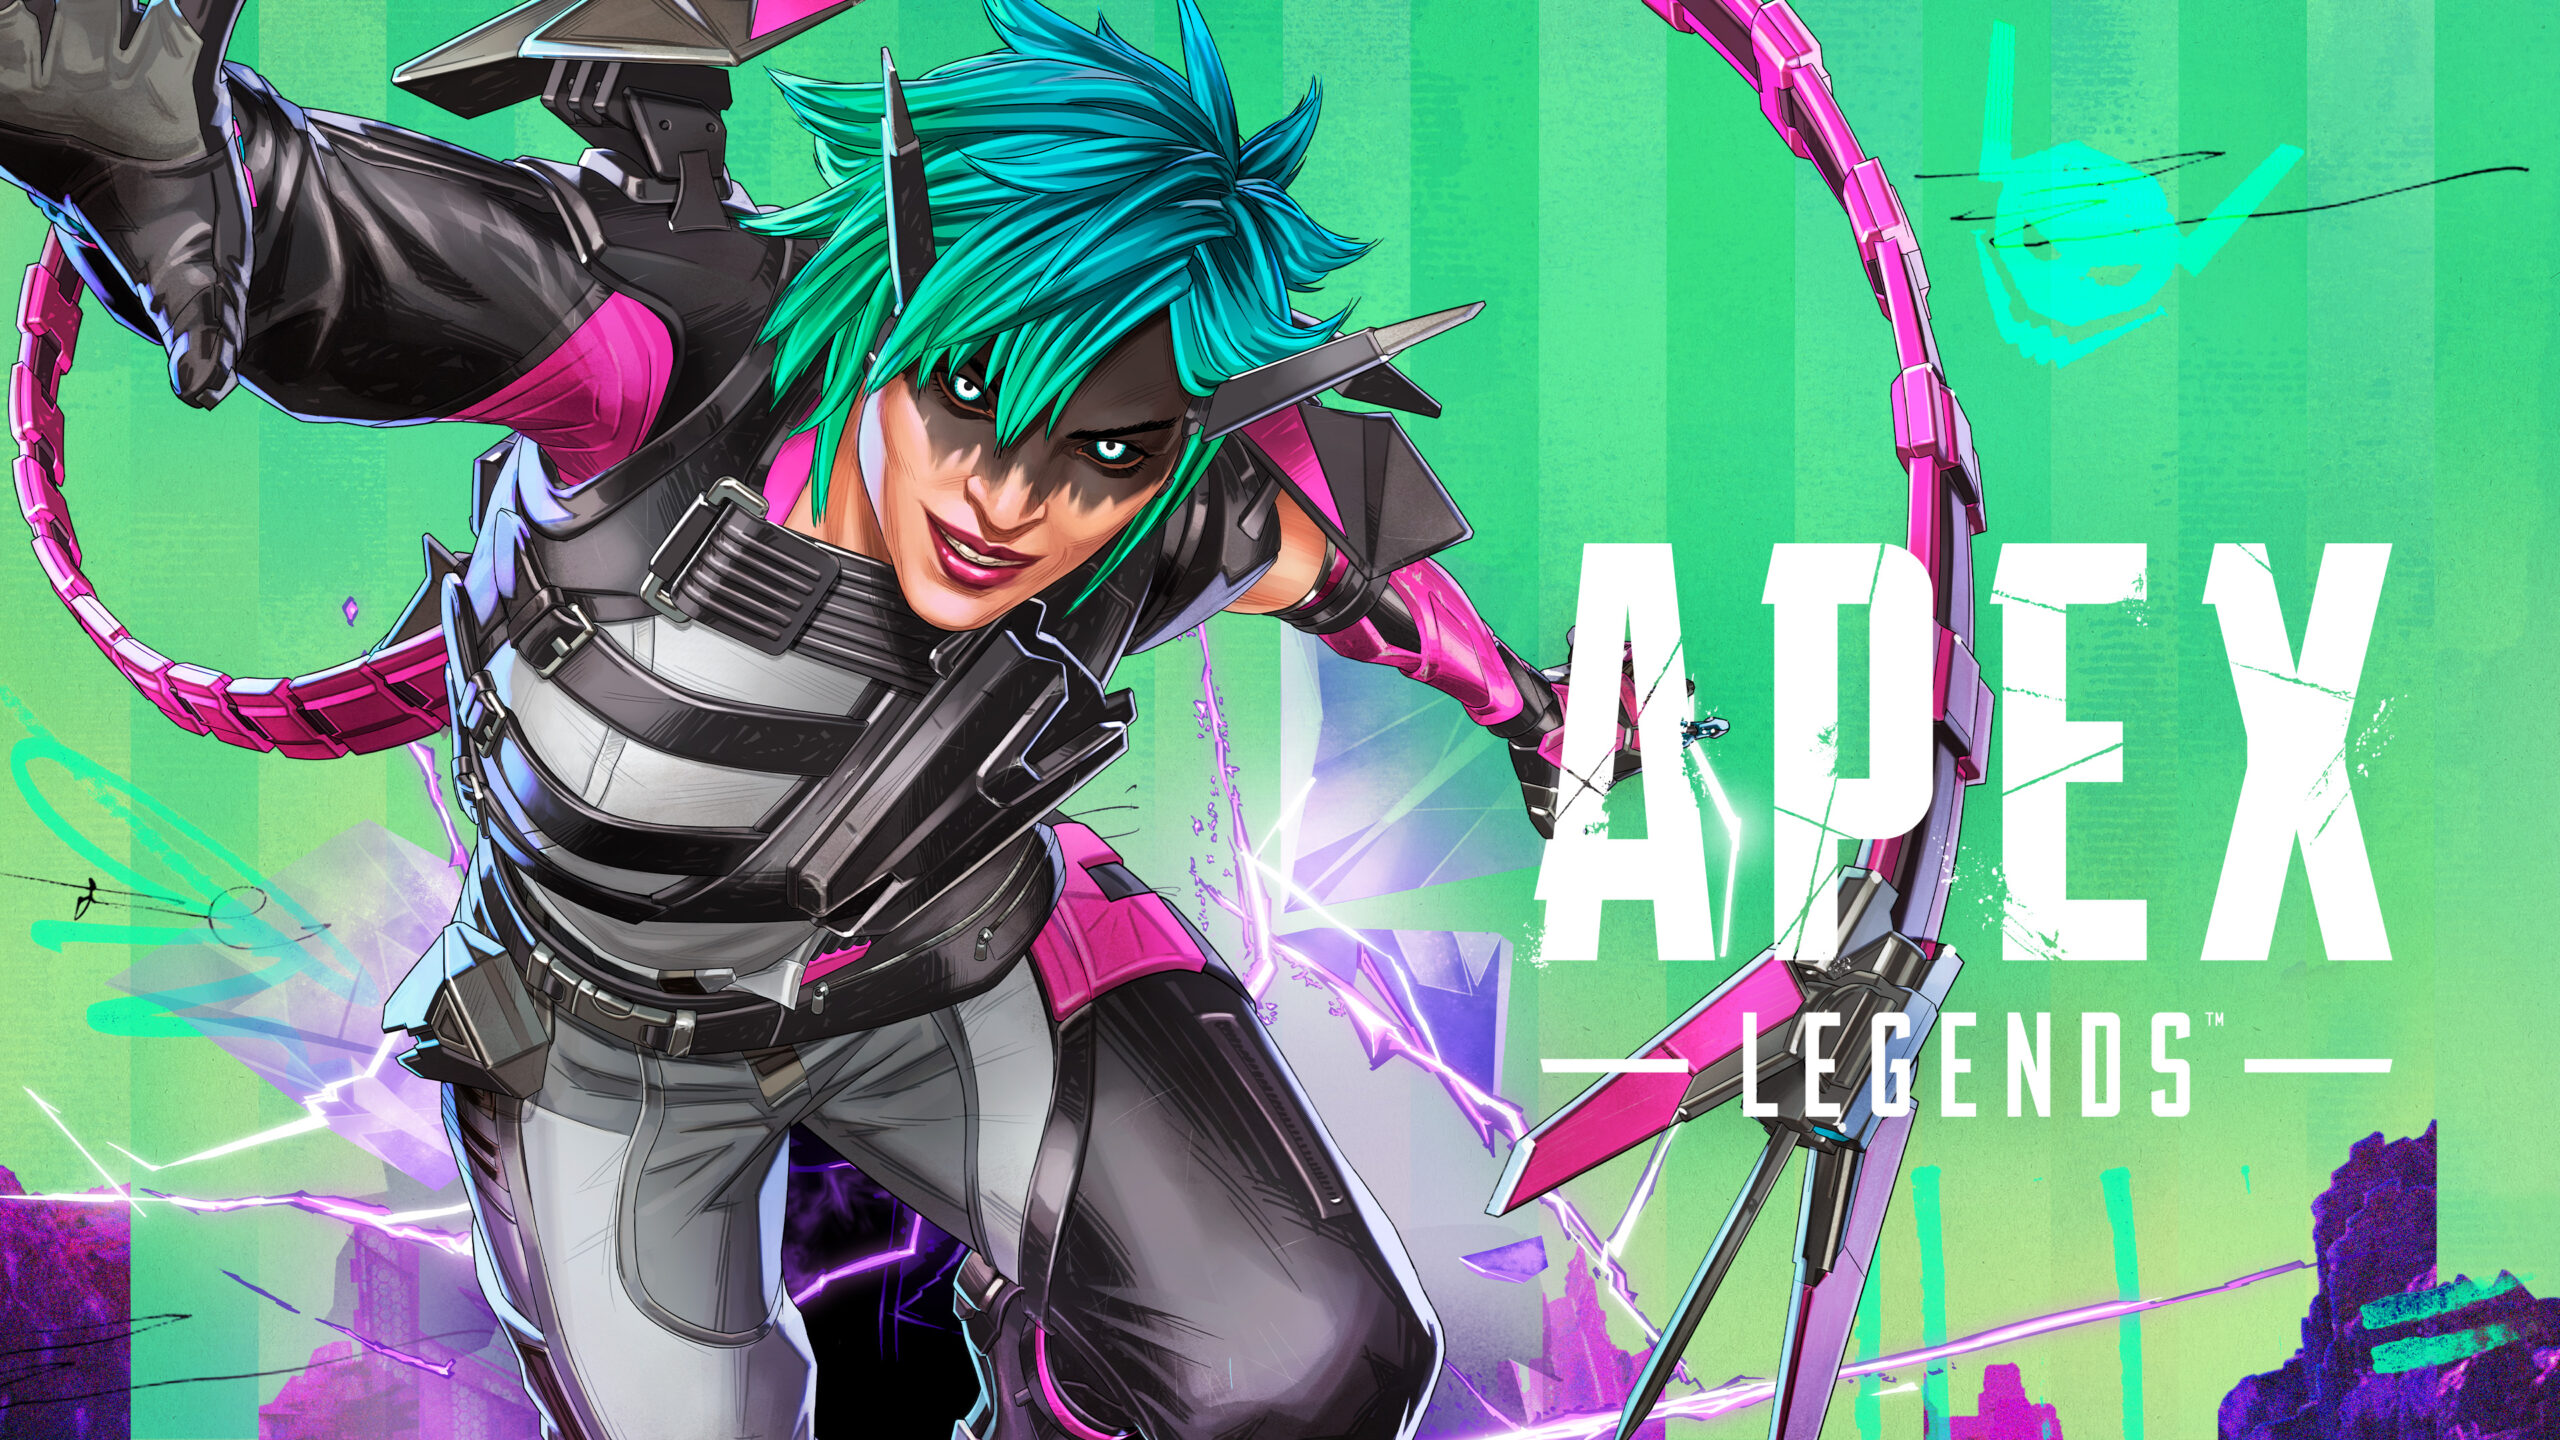 Apex Legends: Upheaval’ın Oynanış Fragmanı Yayınlandı!